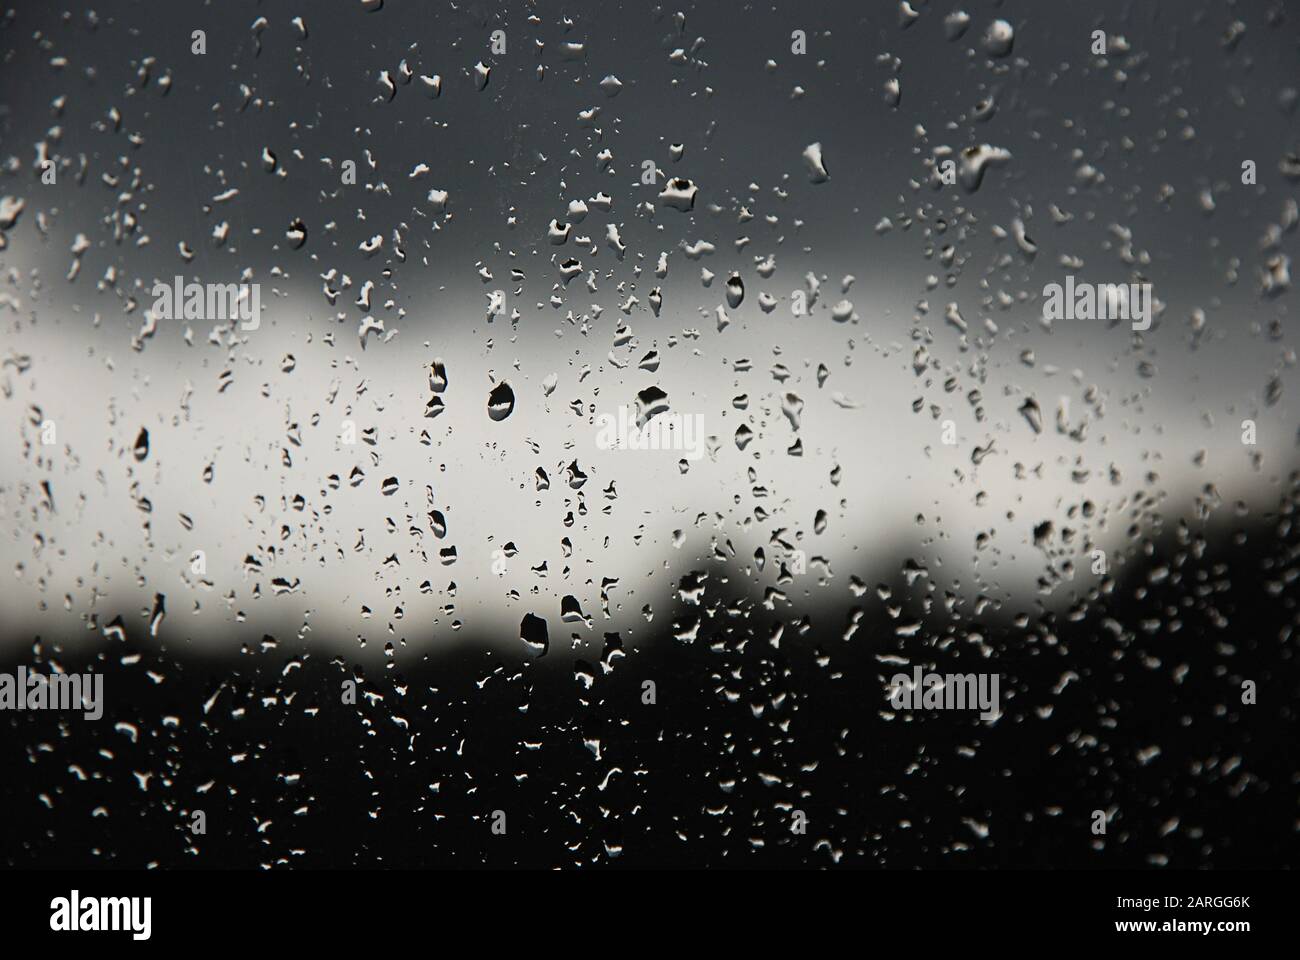 Regentropfen im Fensterbereich. Schwarzer, grauer, weißer Farbverlauf auf unscharfem Hintergrund. Bewölktes Regenwetter außerhalb des Fensters. Kühlung, Regen, schlechtes Wetter Stockfoto